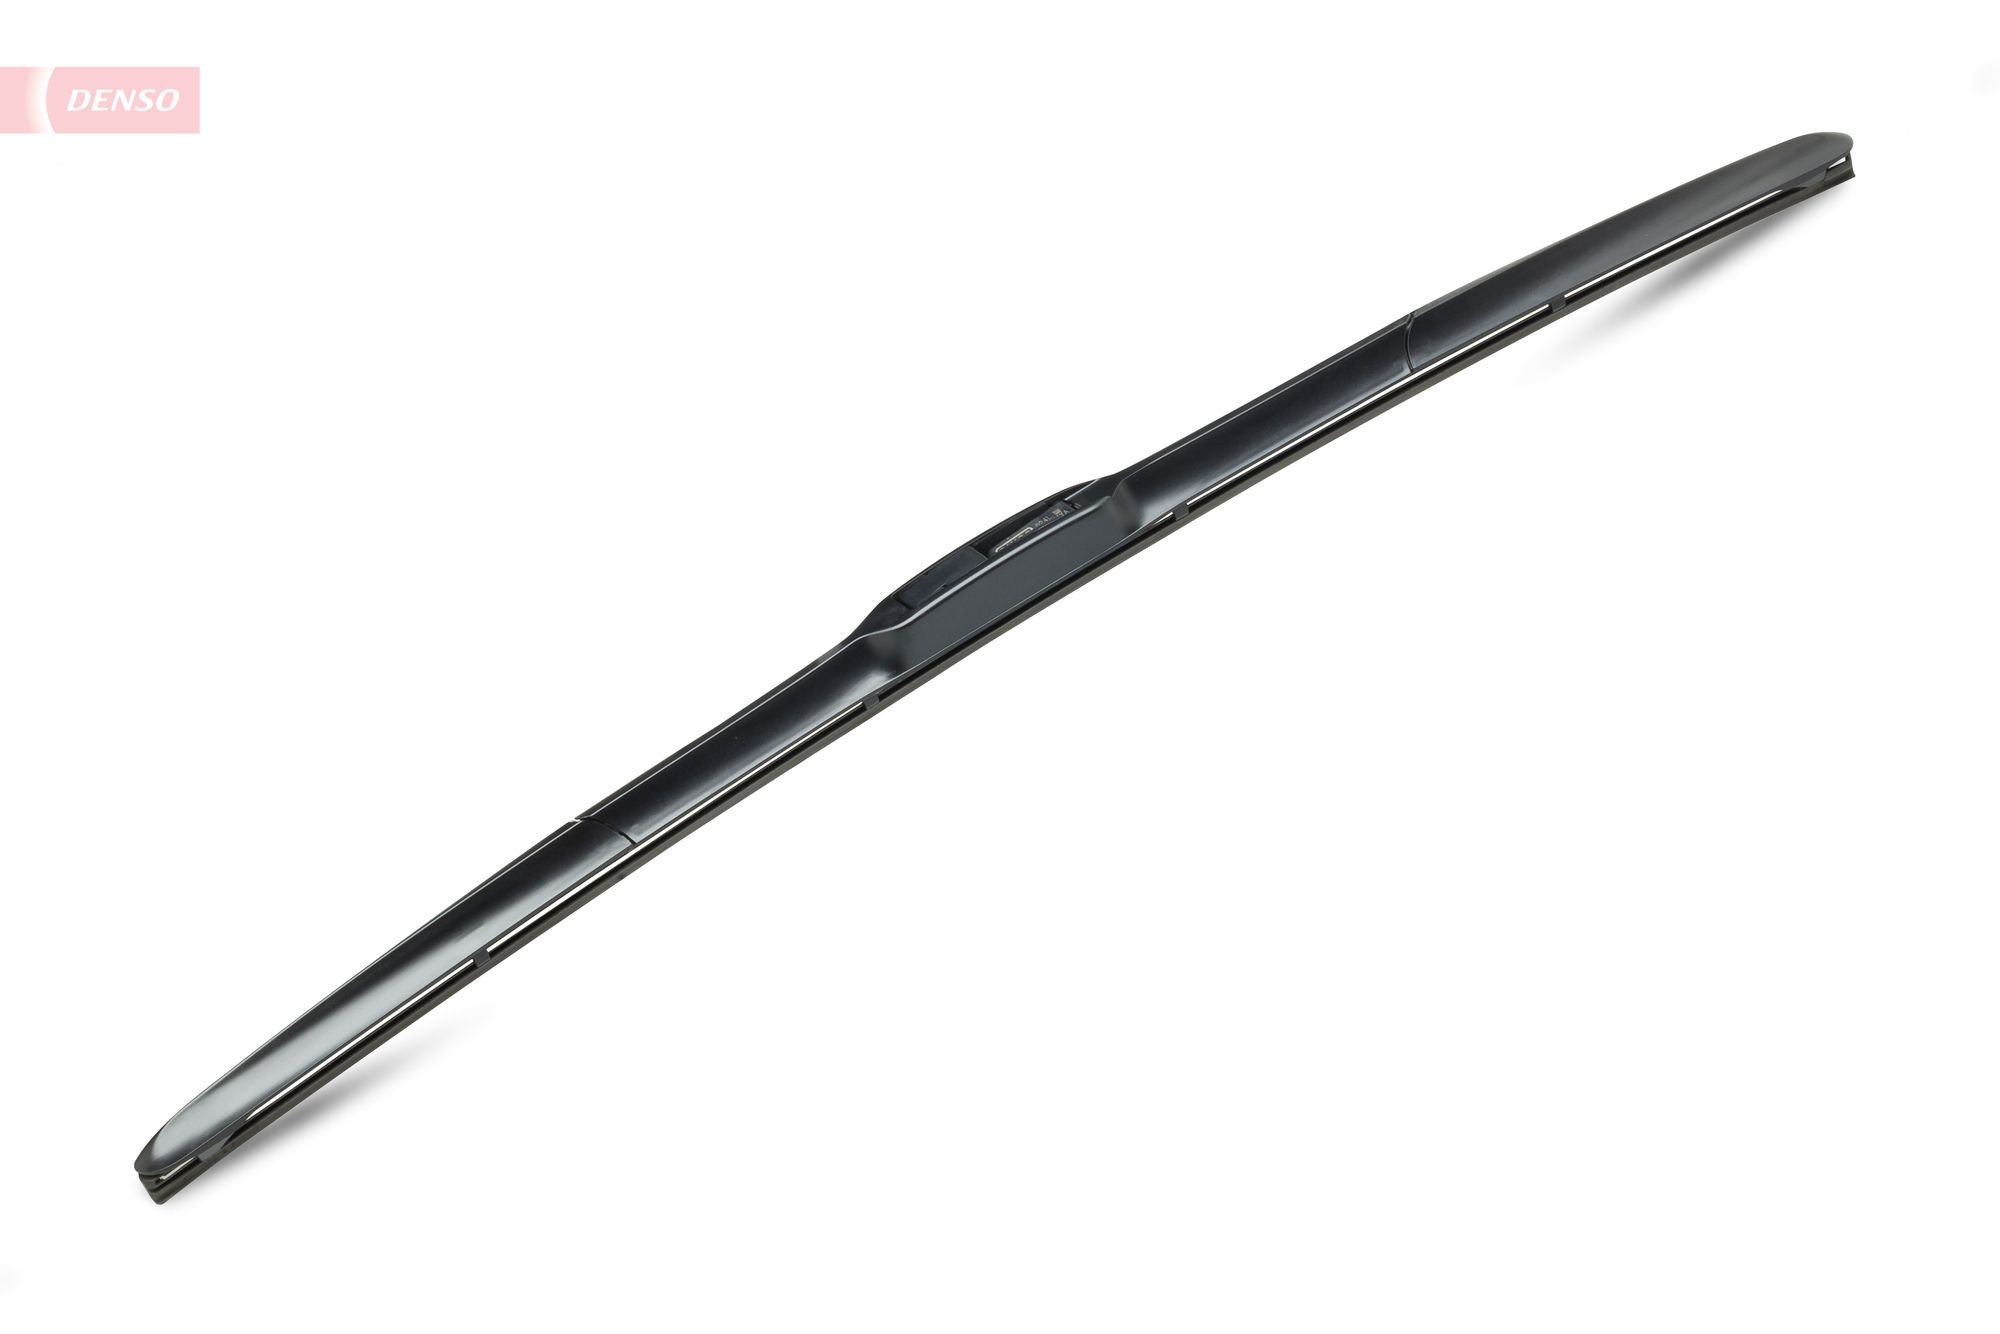 DENSO Windscreen wipers DU-060L buy online